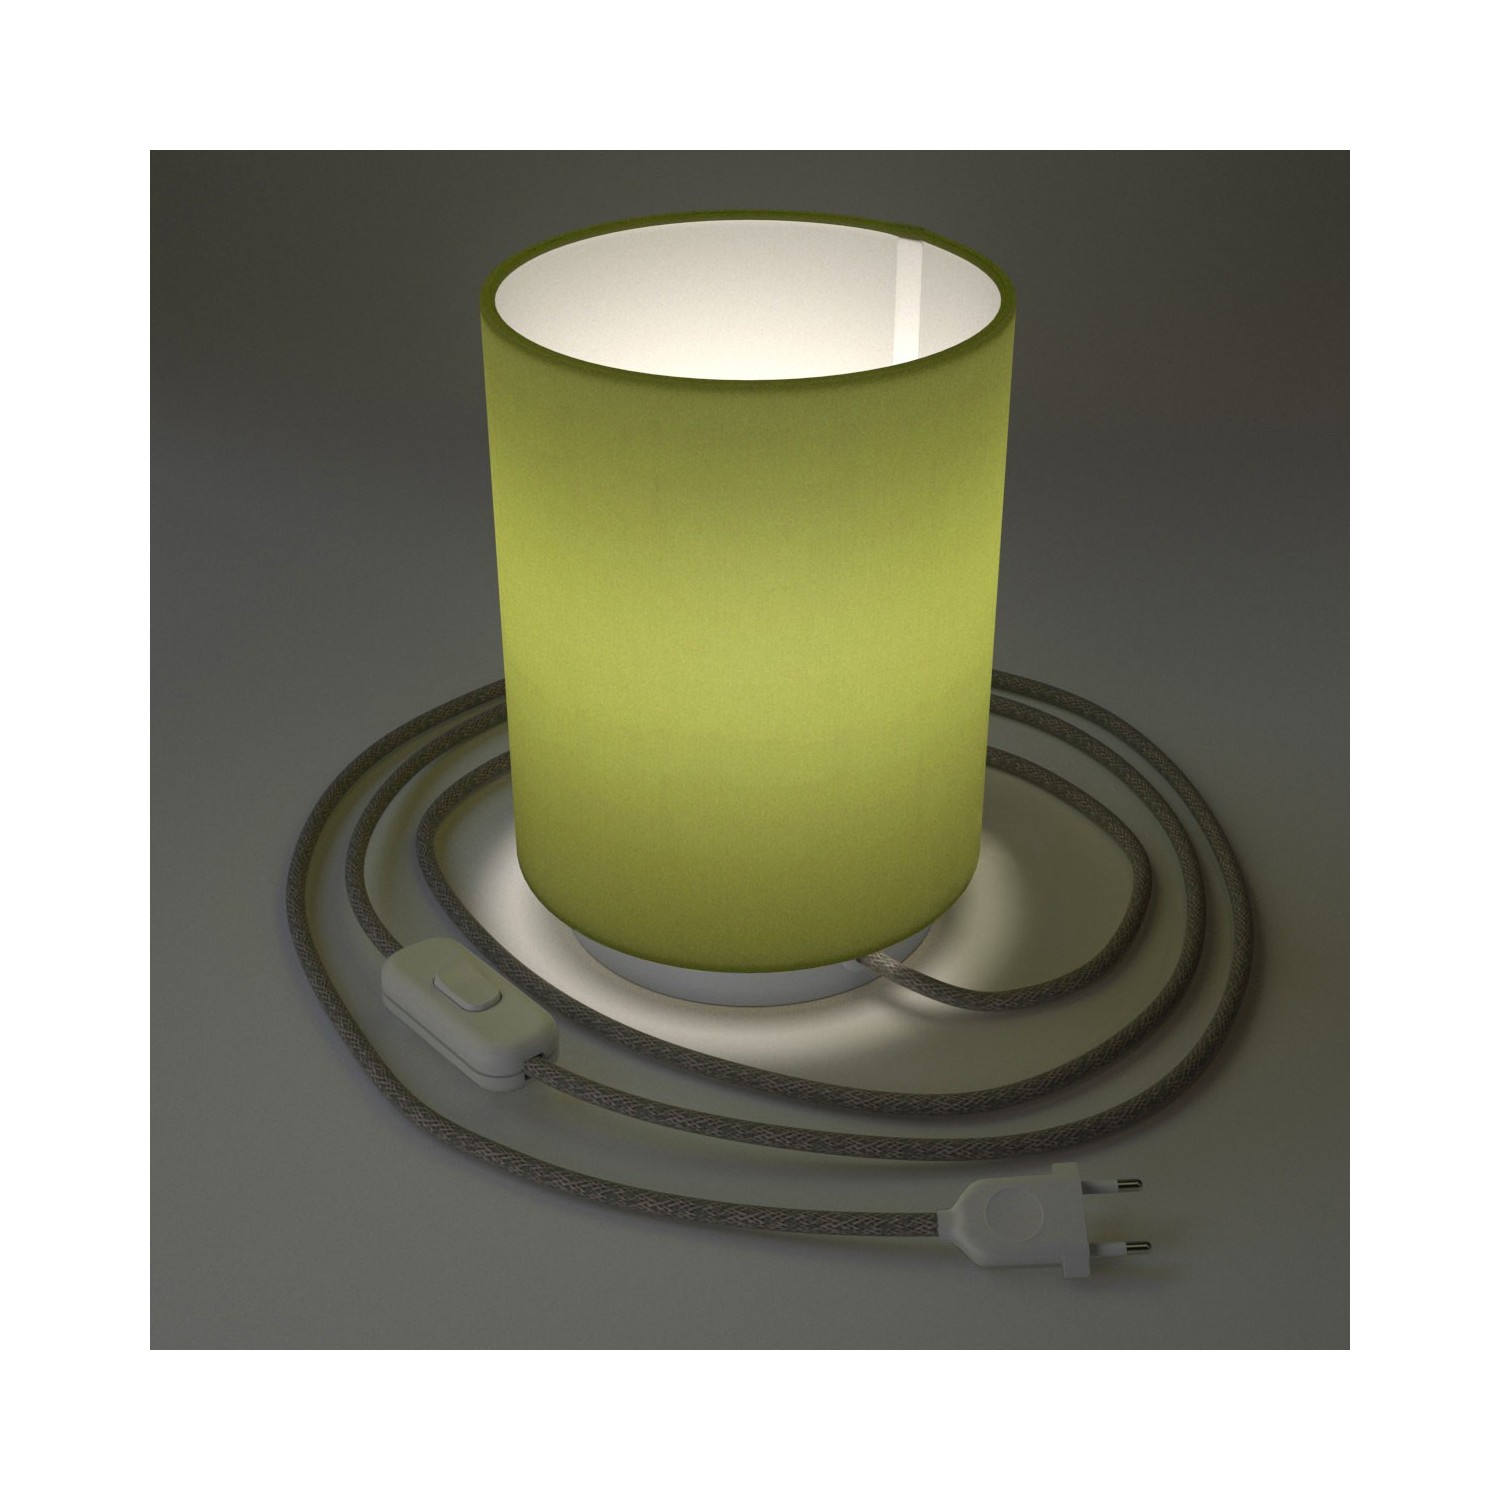 Metall Posaluce mit Lampenschirm Cilindro Leinwand Olivgrün, komplett mit Textilkabel, Schalter und 2-poligem Stecker